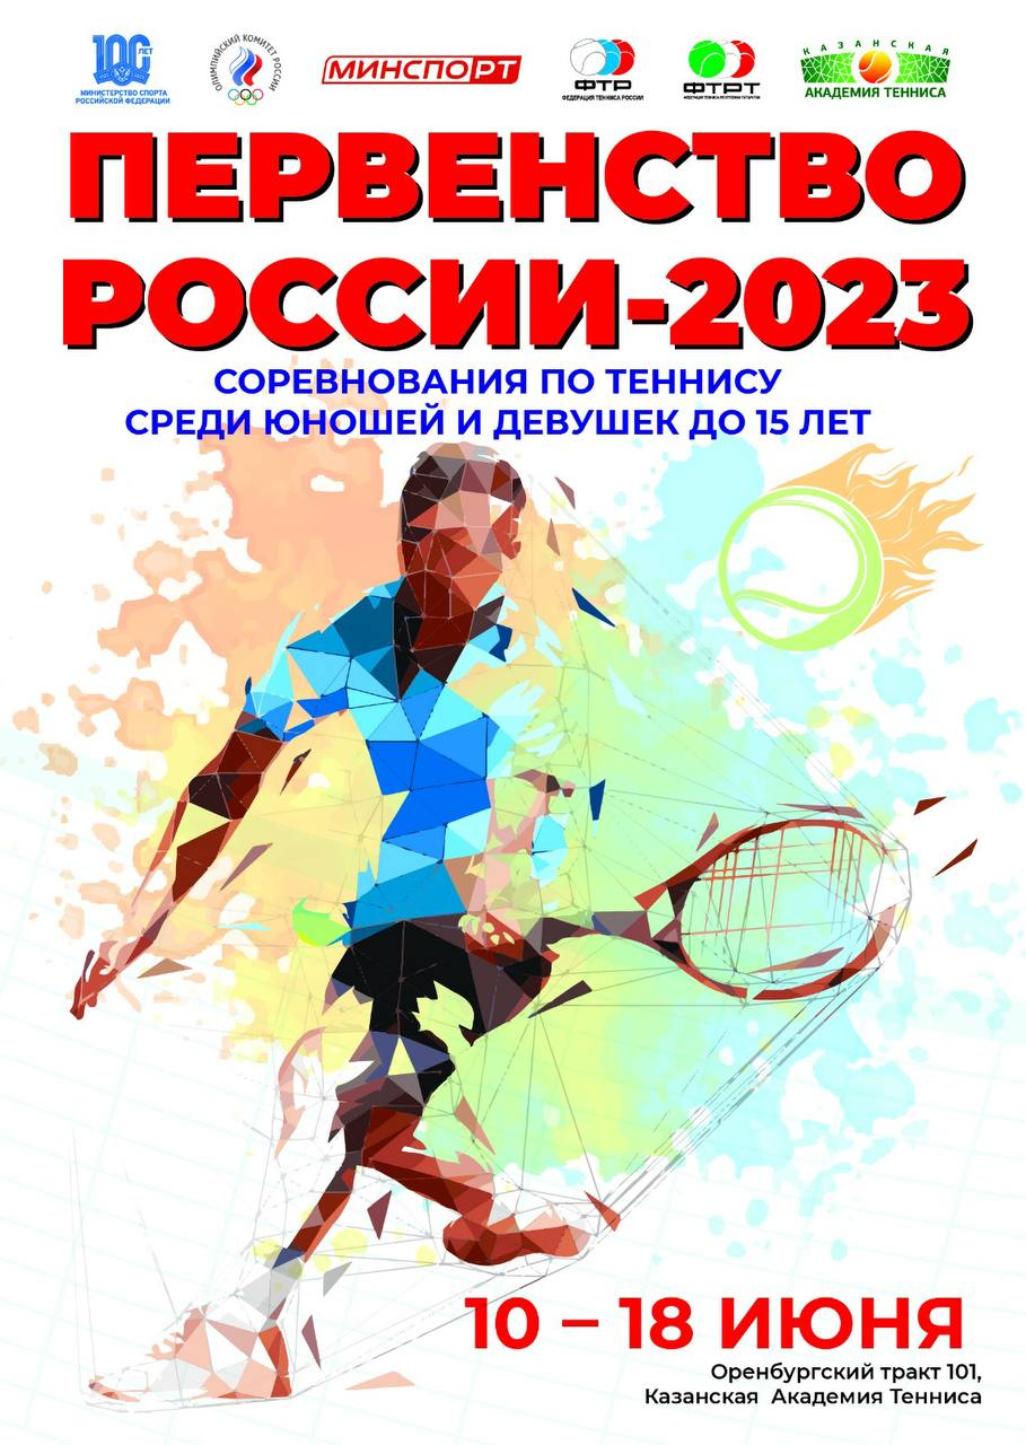 Первенство России по теннису 2023 снова в Казани!